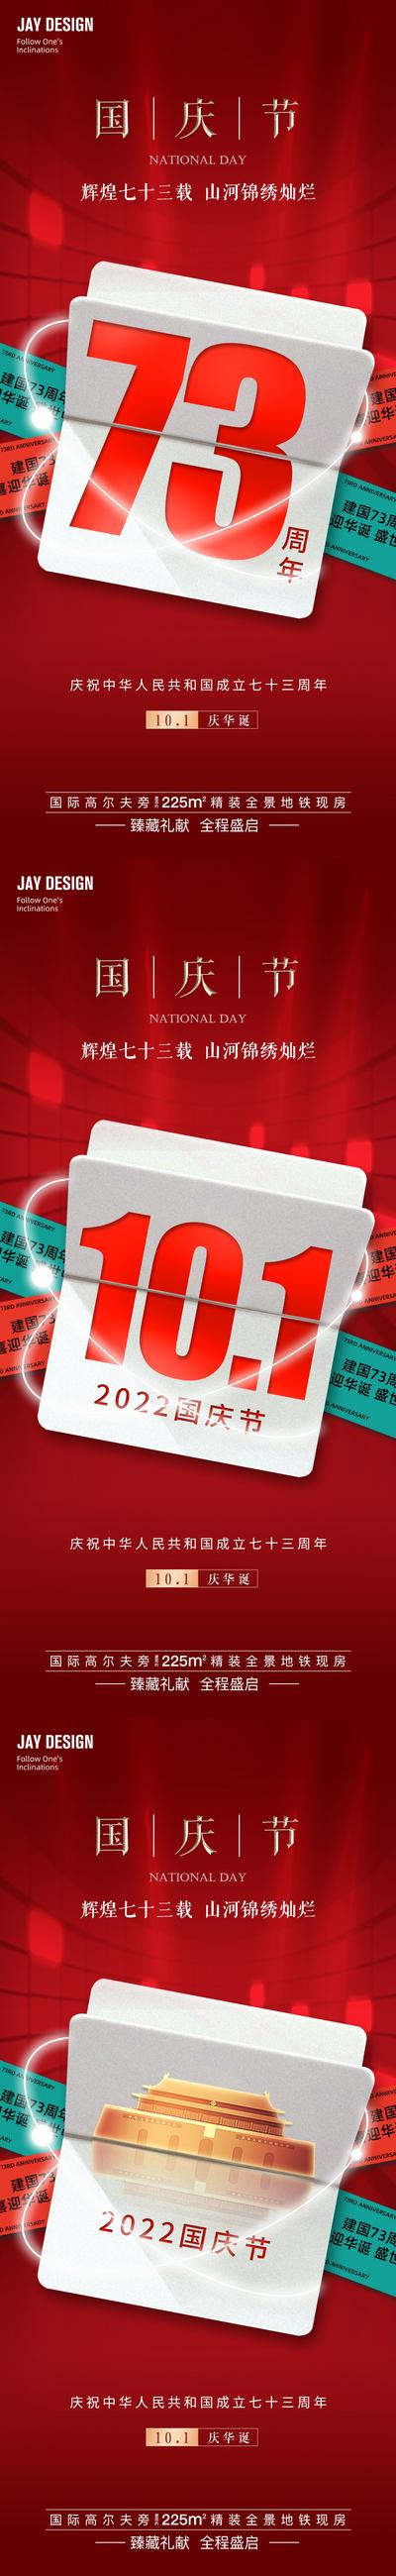 南门网 广告 海报 地产 国庆节 医美 节日 周年庆 红金 系列 73周年 2022